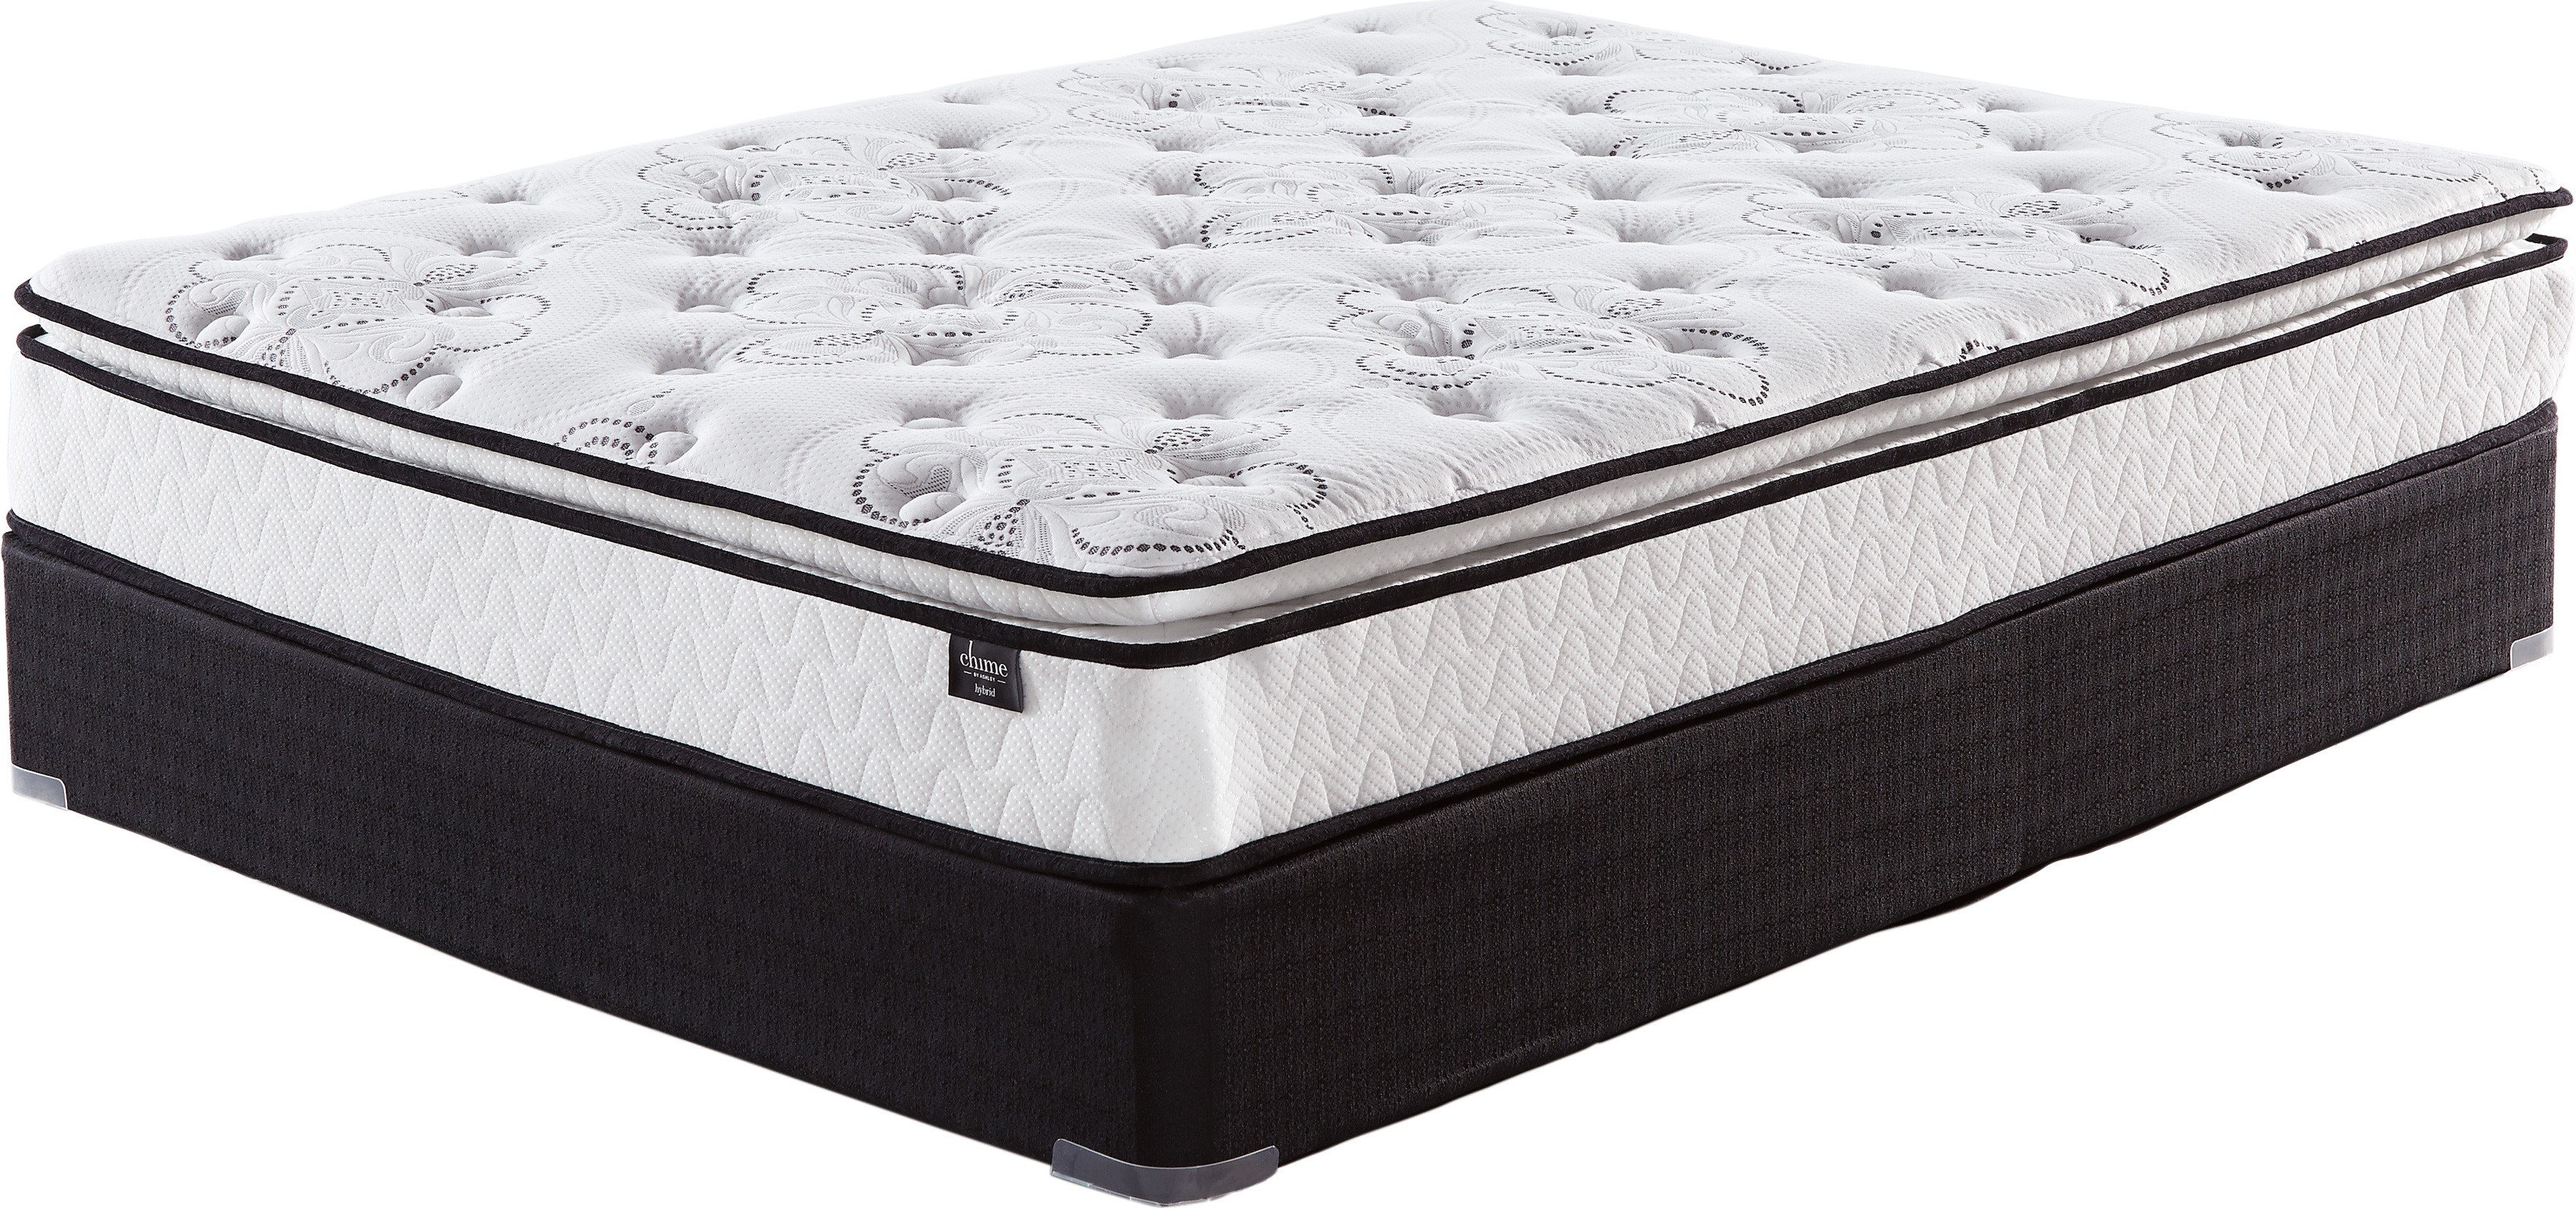 10 inch bonnell pt mattress